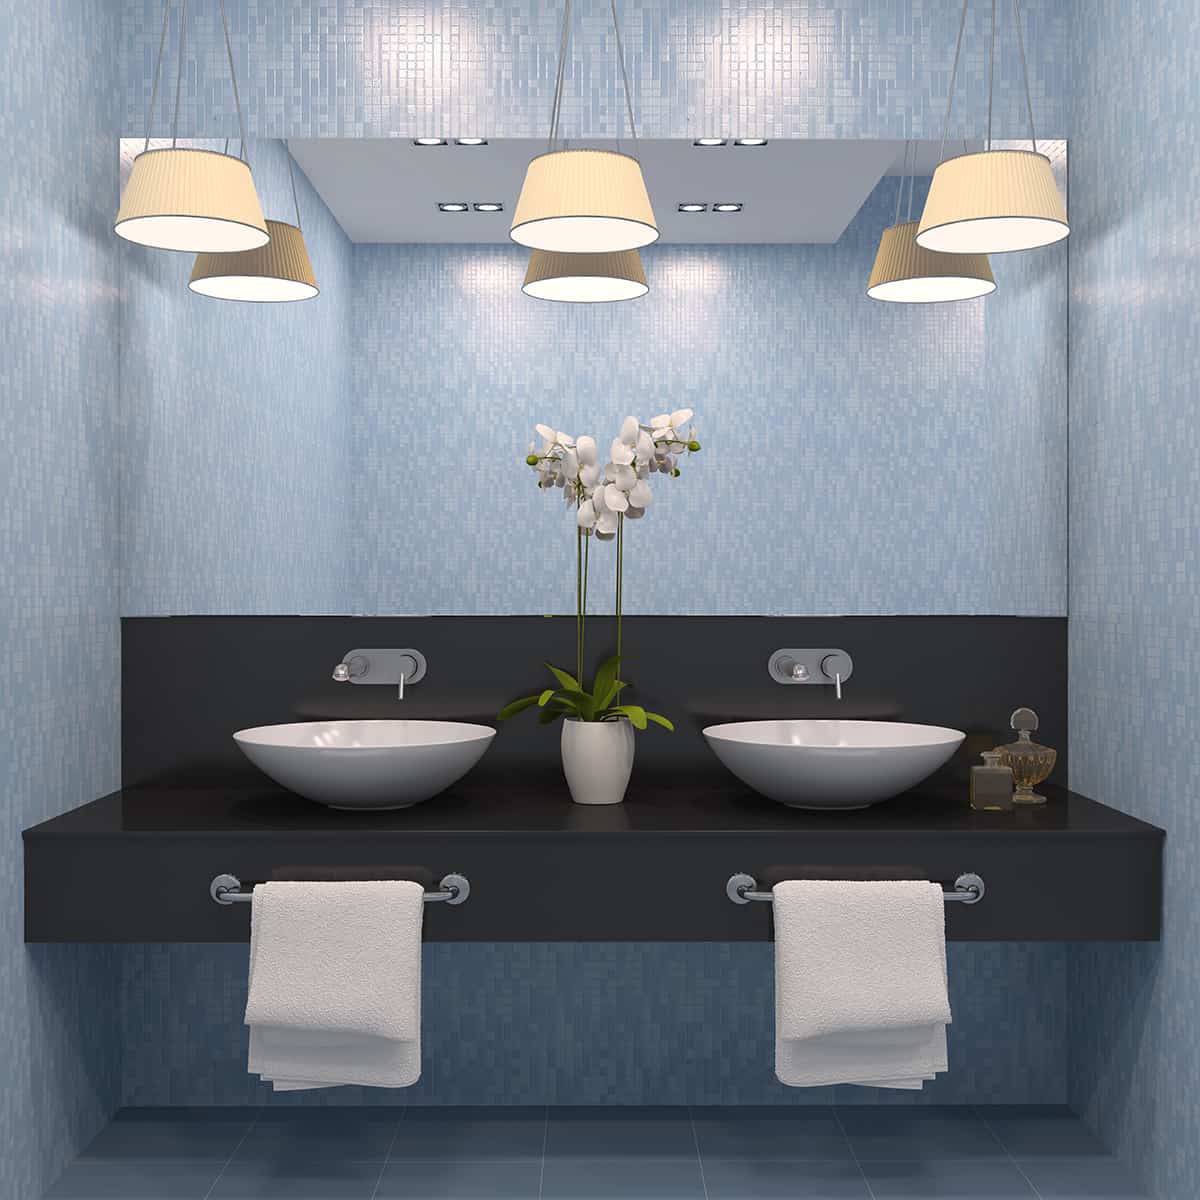 淺藍色的牆壁搭配深灰色的浴室櫥櫃